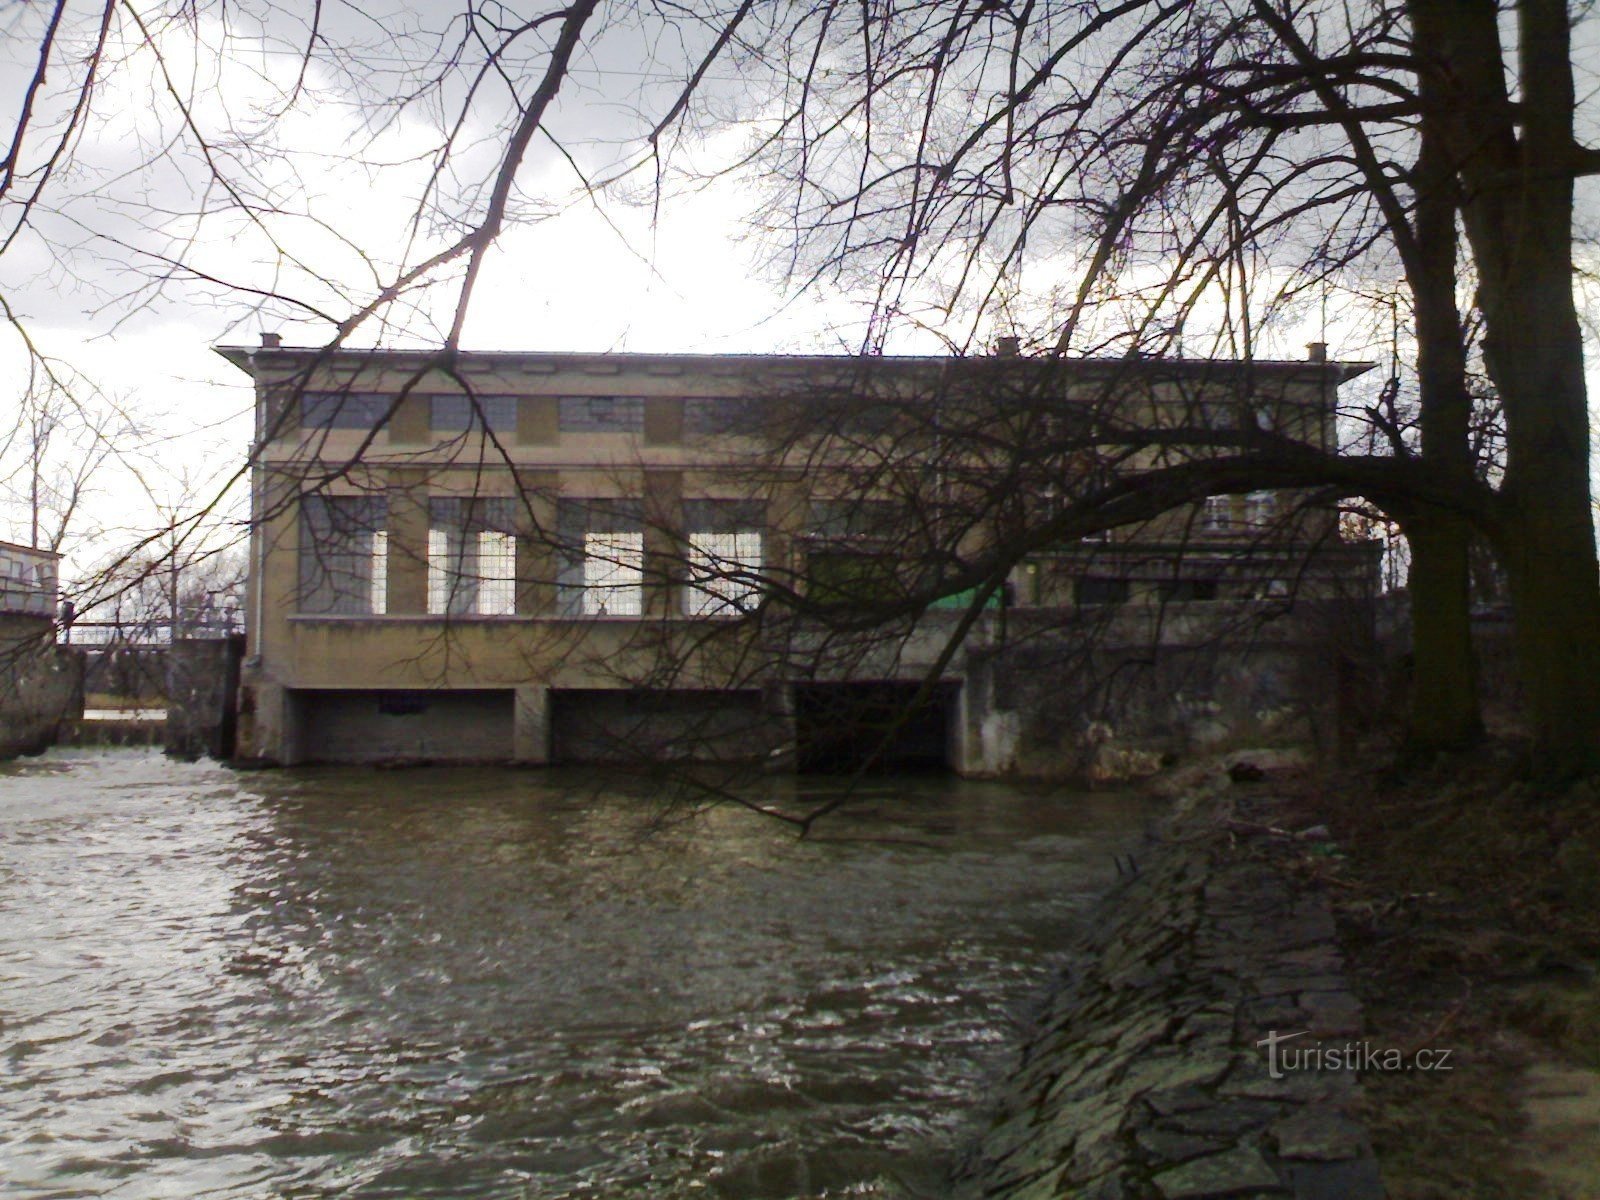 Albrechtice nad Orlicí - đập trên Orlicí, nhà máy thủy điện